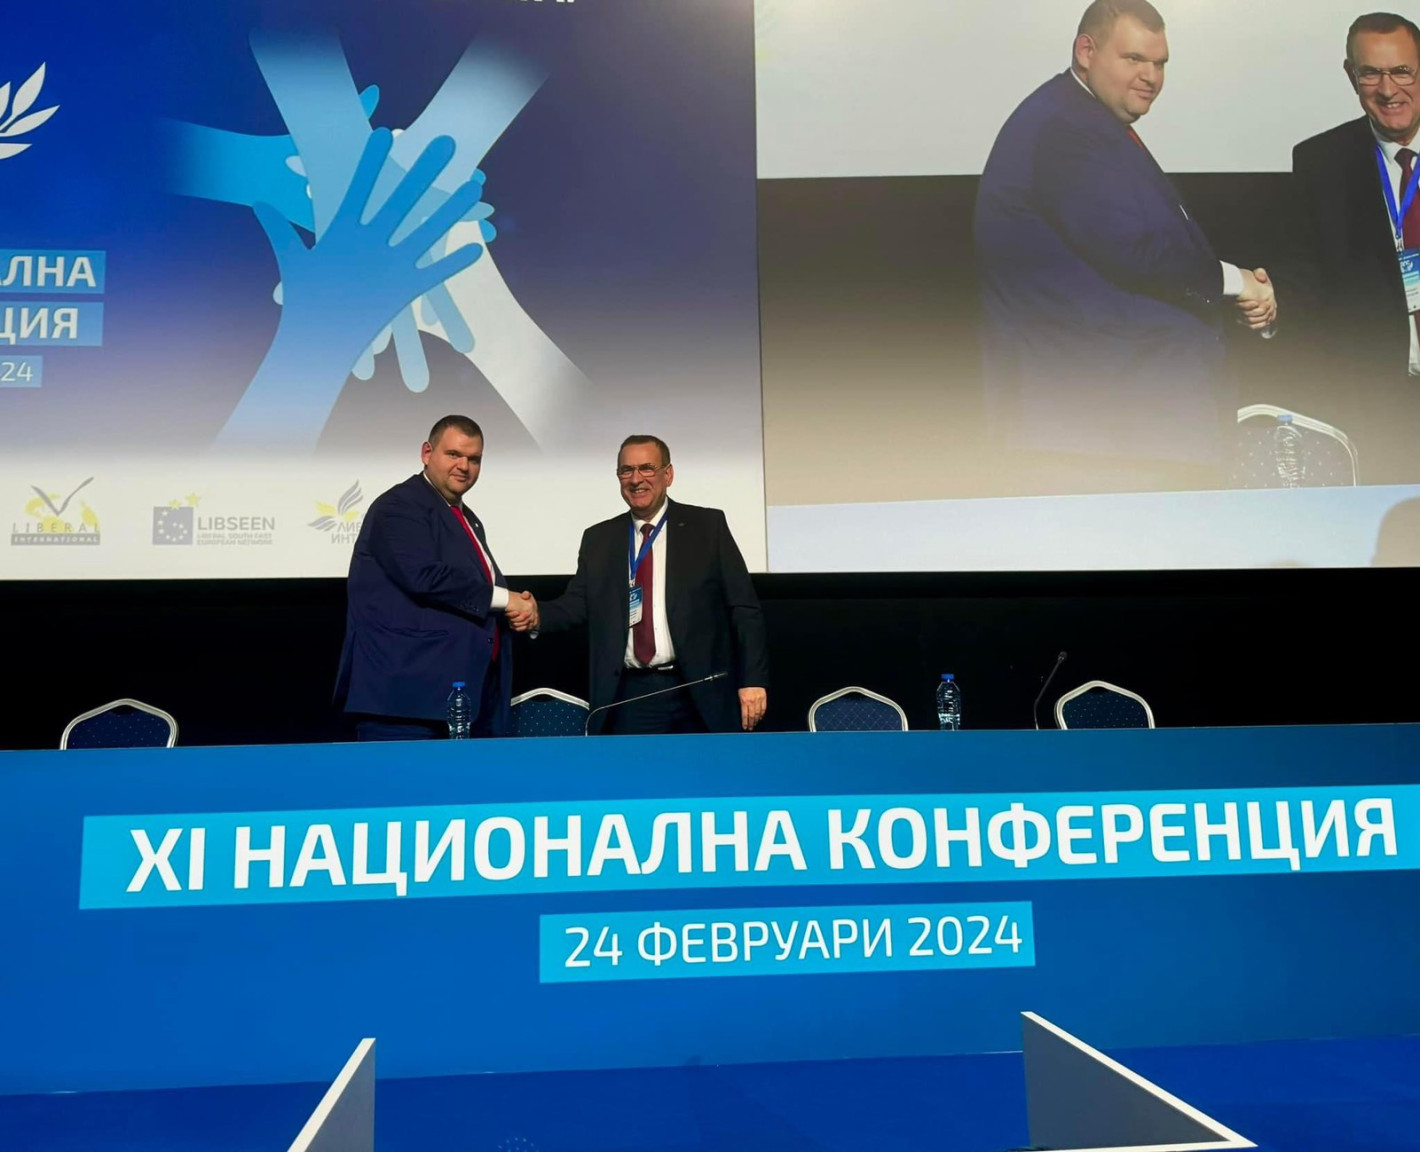 Ексклузивно! Единодушно XI Националната конференция на ДПС избра за председатели Делян Пеевски и Джевдет Чакъров (ВИДЕО)